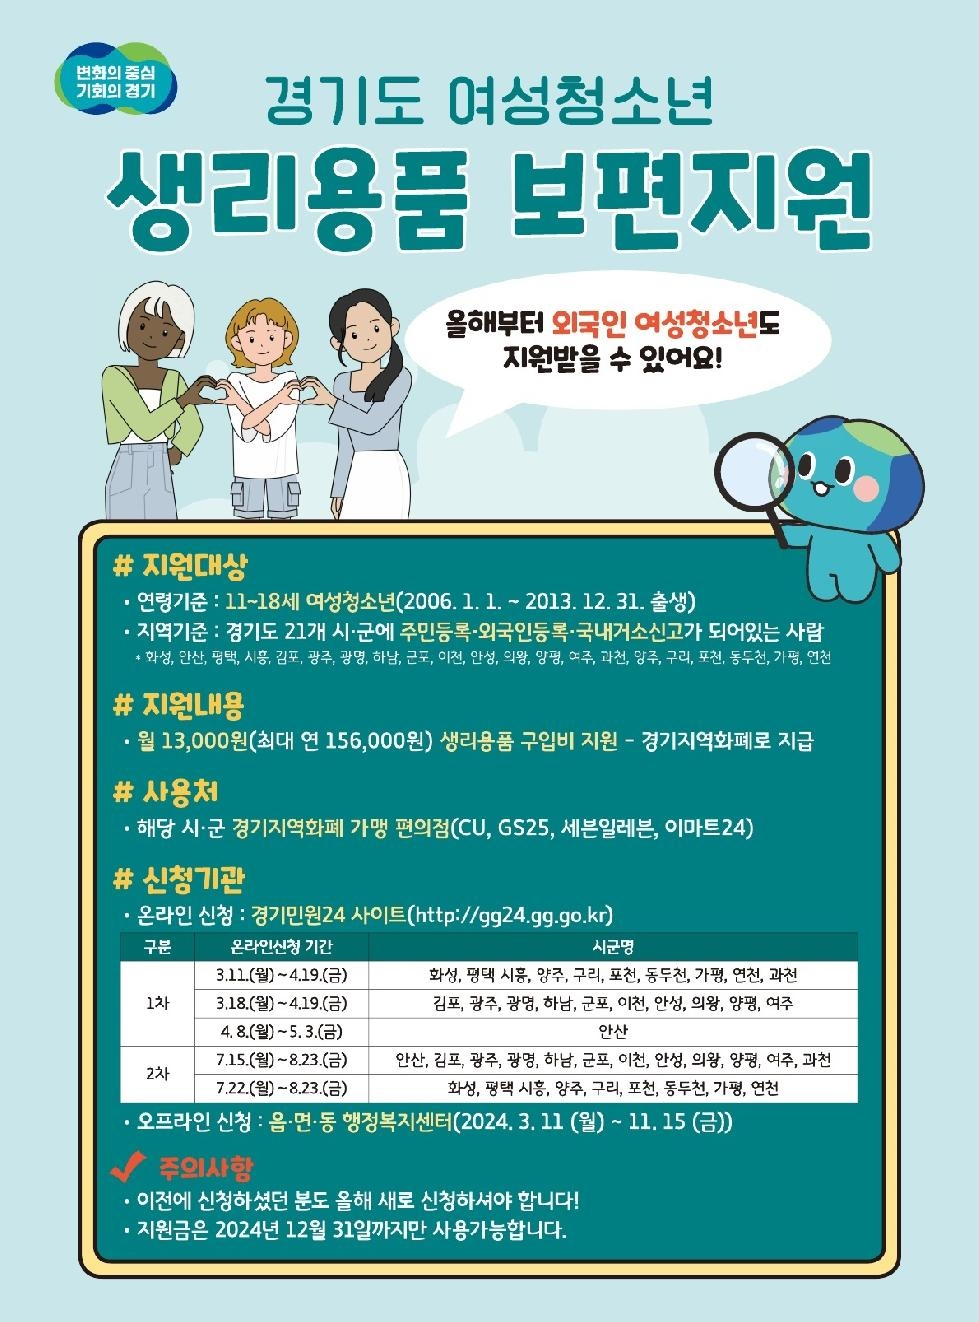 경기도, 여성청소년 생리용품 보편지원 11일부터 접수. 올해부터 외국인 여성청소년 포함